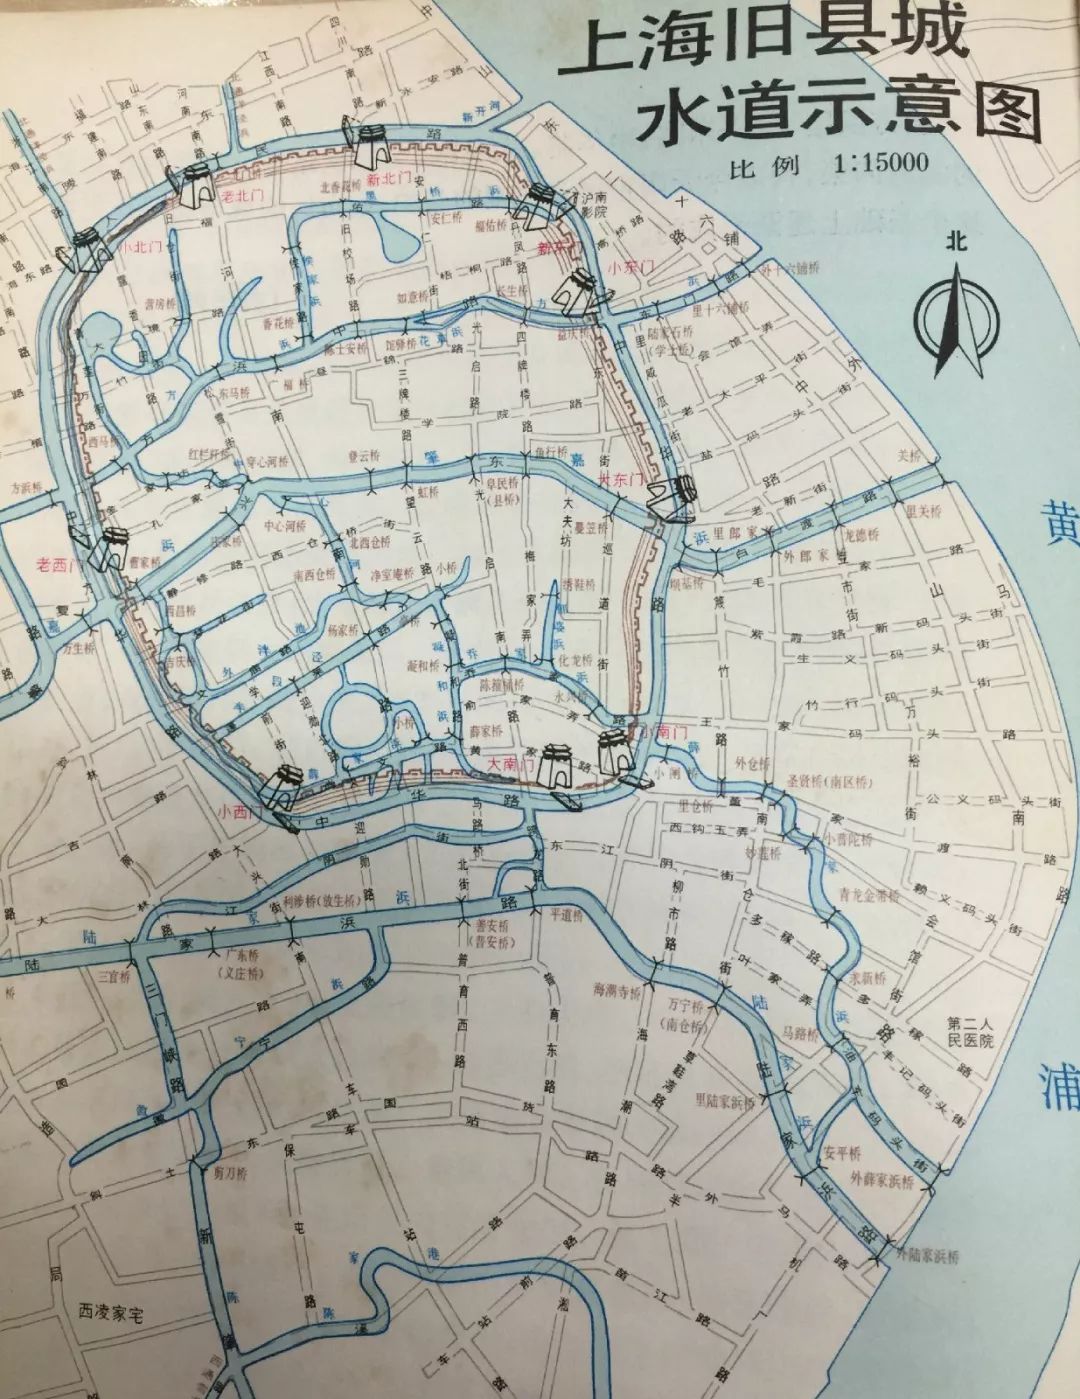 上海旧县城水道示意图.图中还标出了原有桥梁的位置